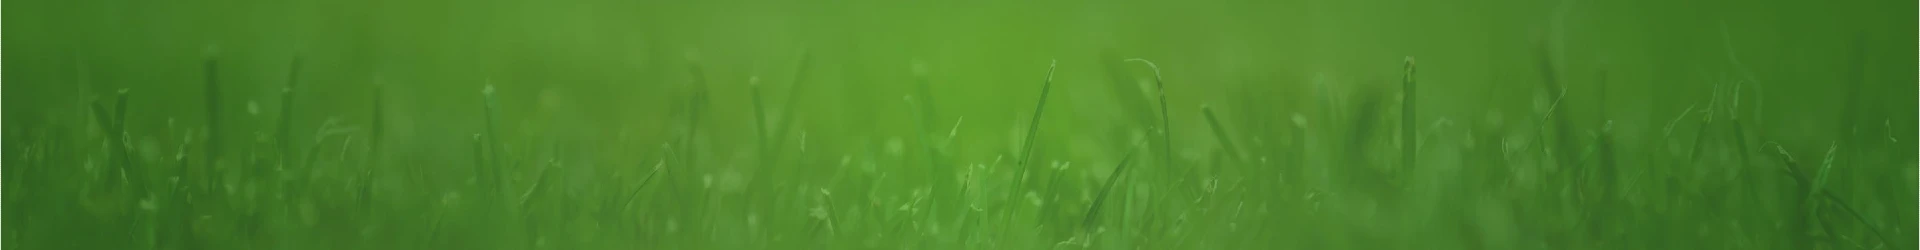 grass background header